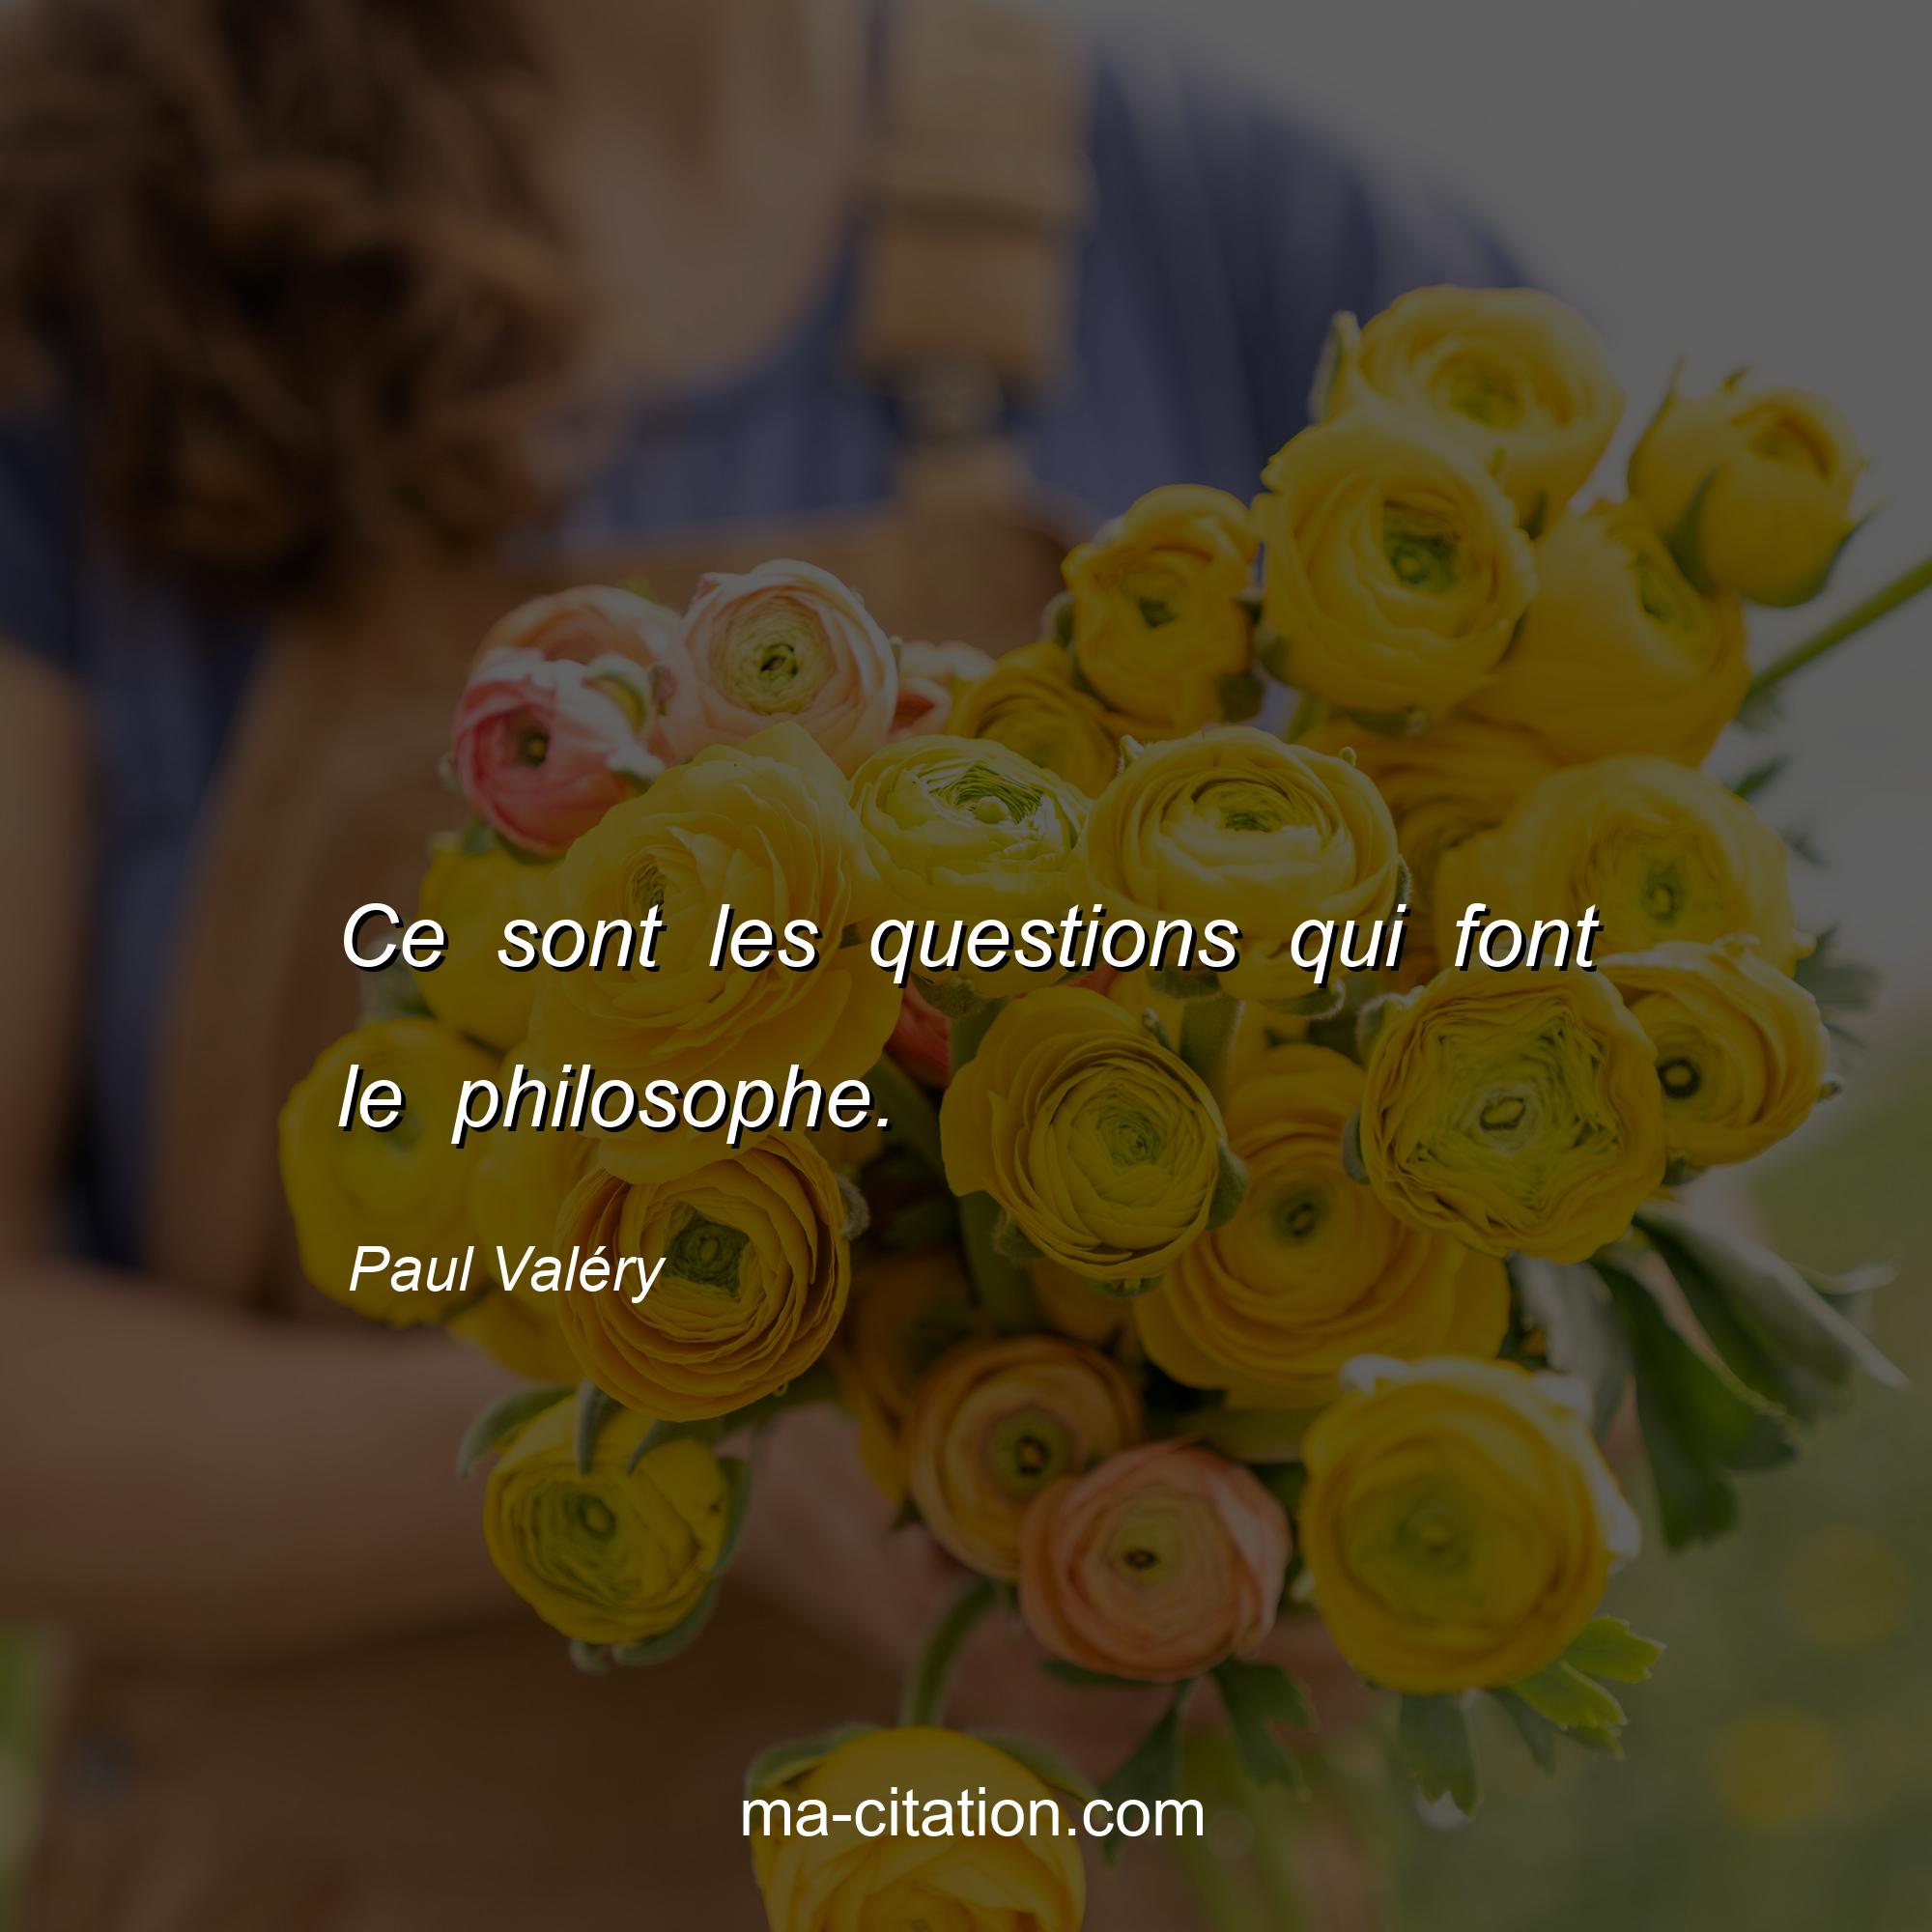 Paul Valéry : Ce sont les questions qui font le philosophe.